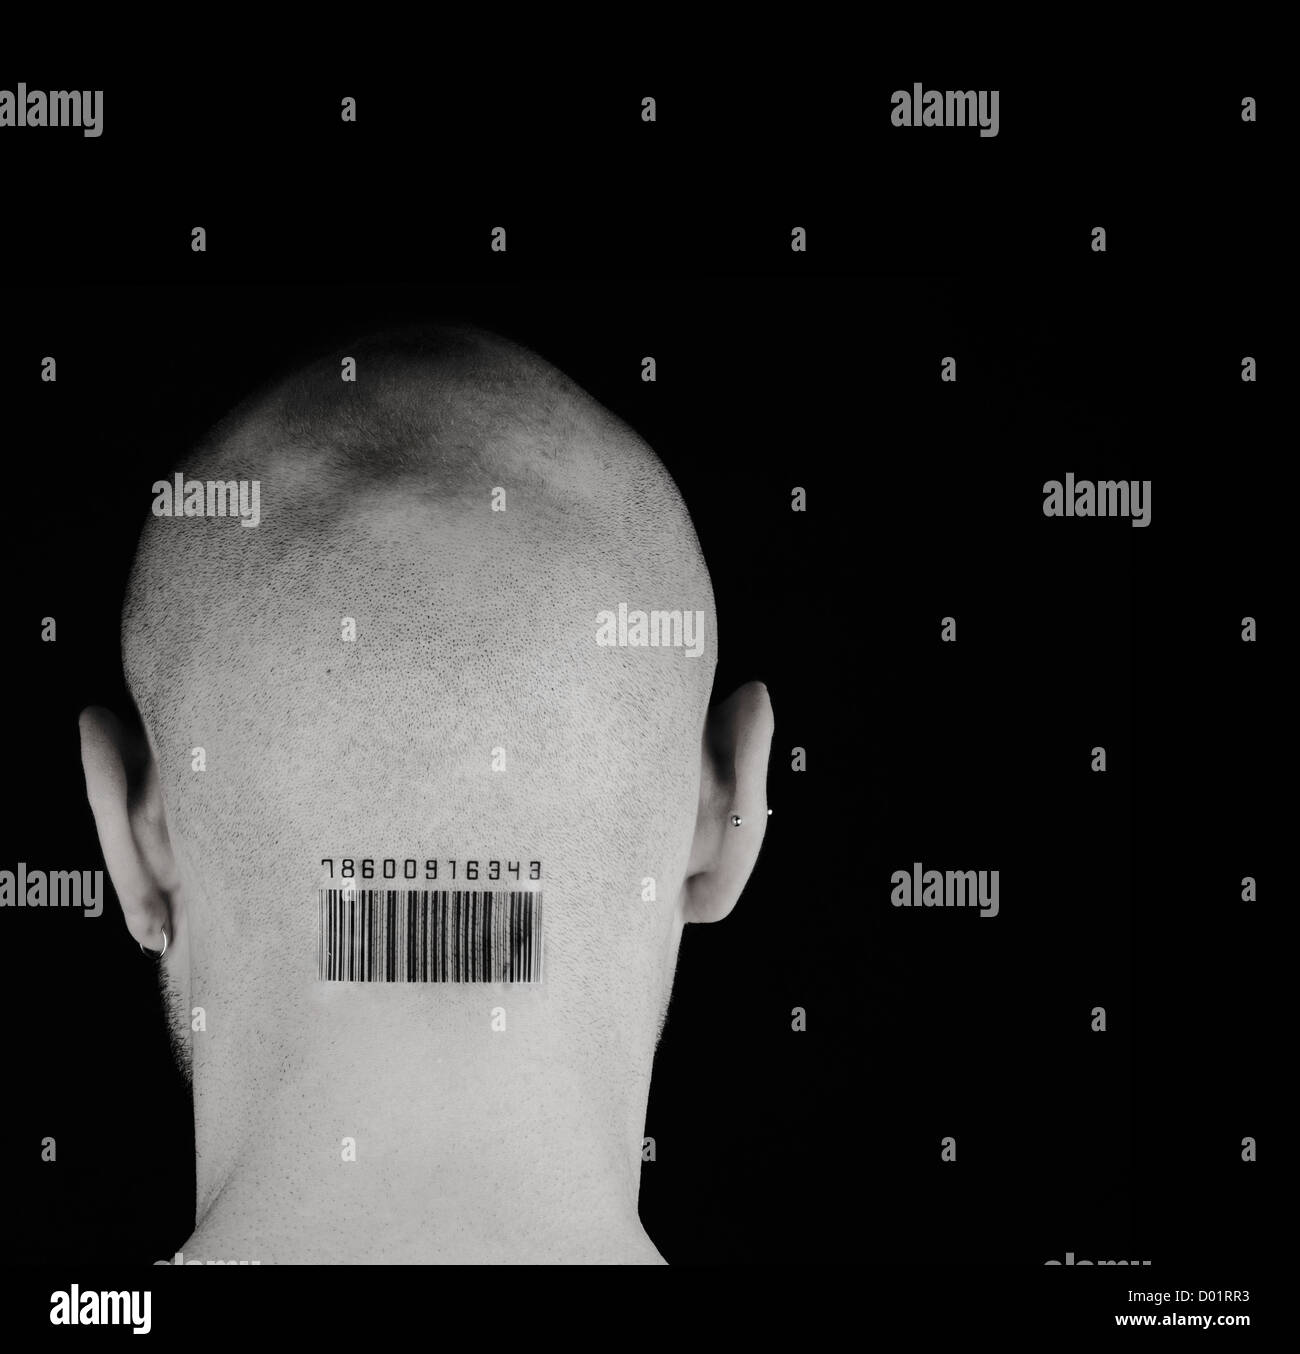 Uomo con codice a barre sulla testa contro lo sfondo nero Foto Stock